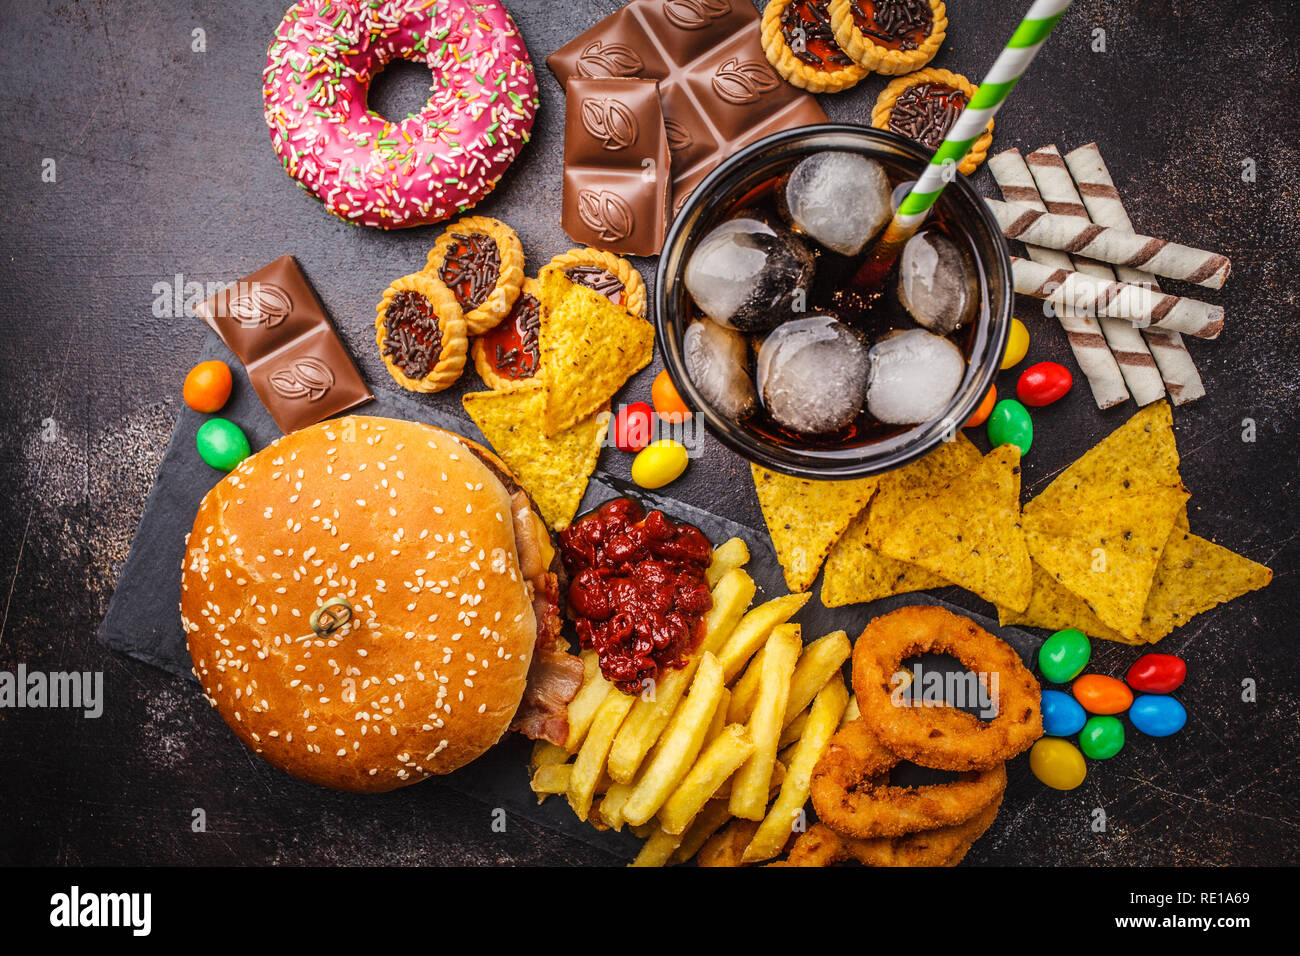 Junk food Konzept. Ungesunde Lebensmittel Hintergrund. Fast Food und Zucker. Burger, Süßigkeiten, Chips, Schokolade, Donuts, Soda auf einem dunklen Hintergrund. Stockfoto